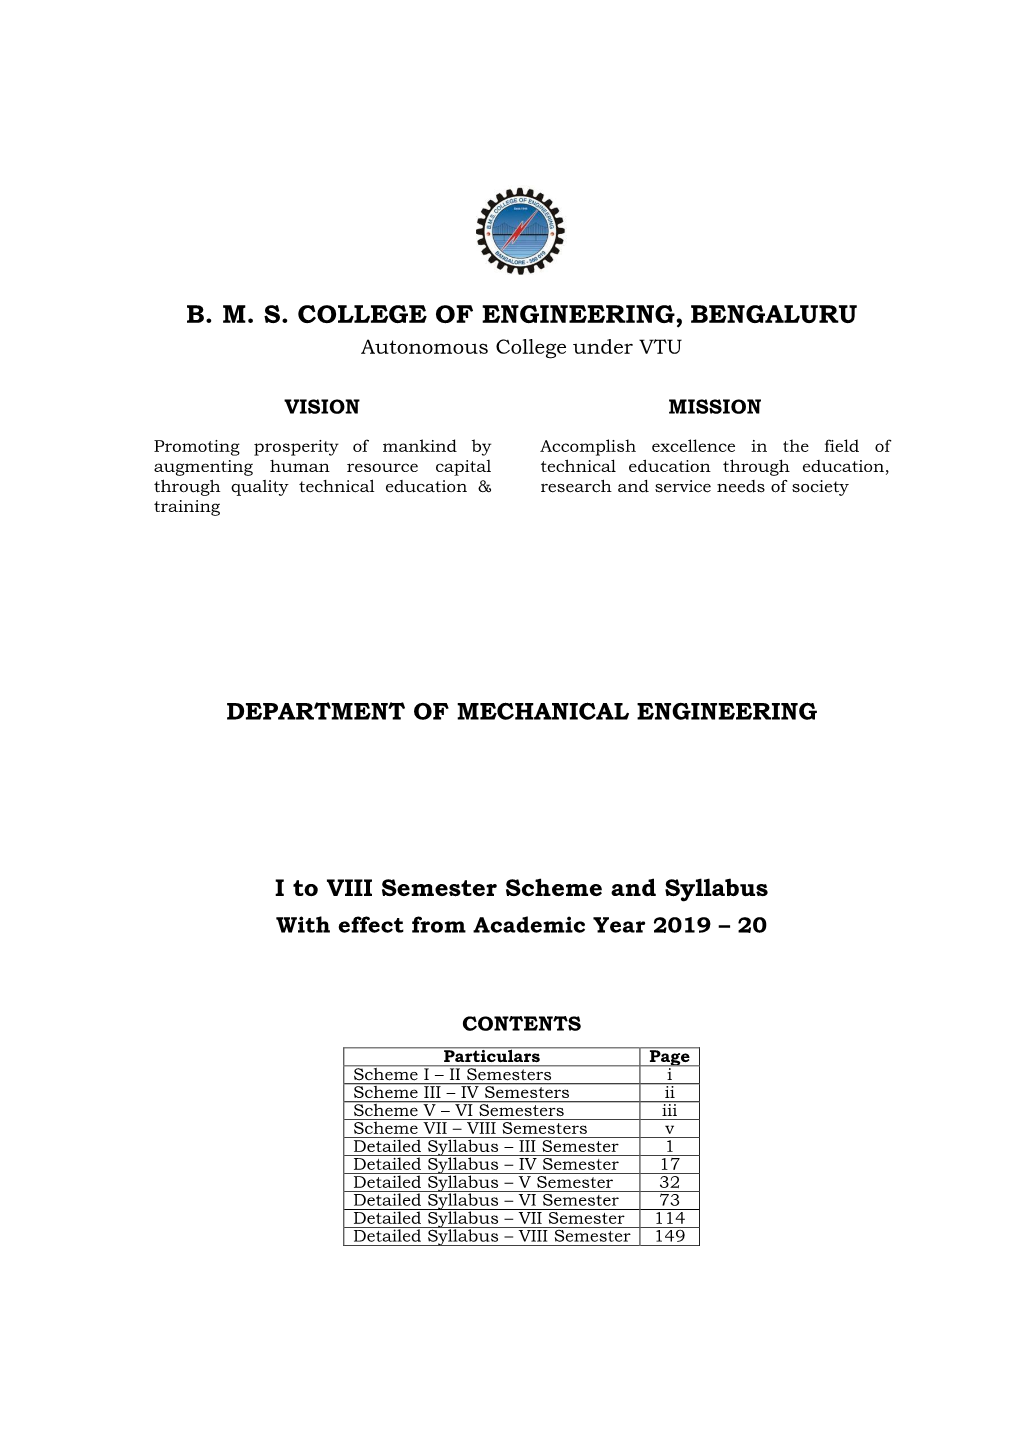 B. M. S. COLLEGE of ENGINEERING, BENGALURU Autonomous College Under VTU